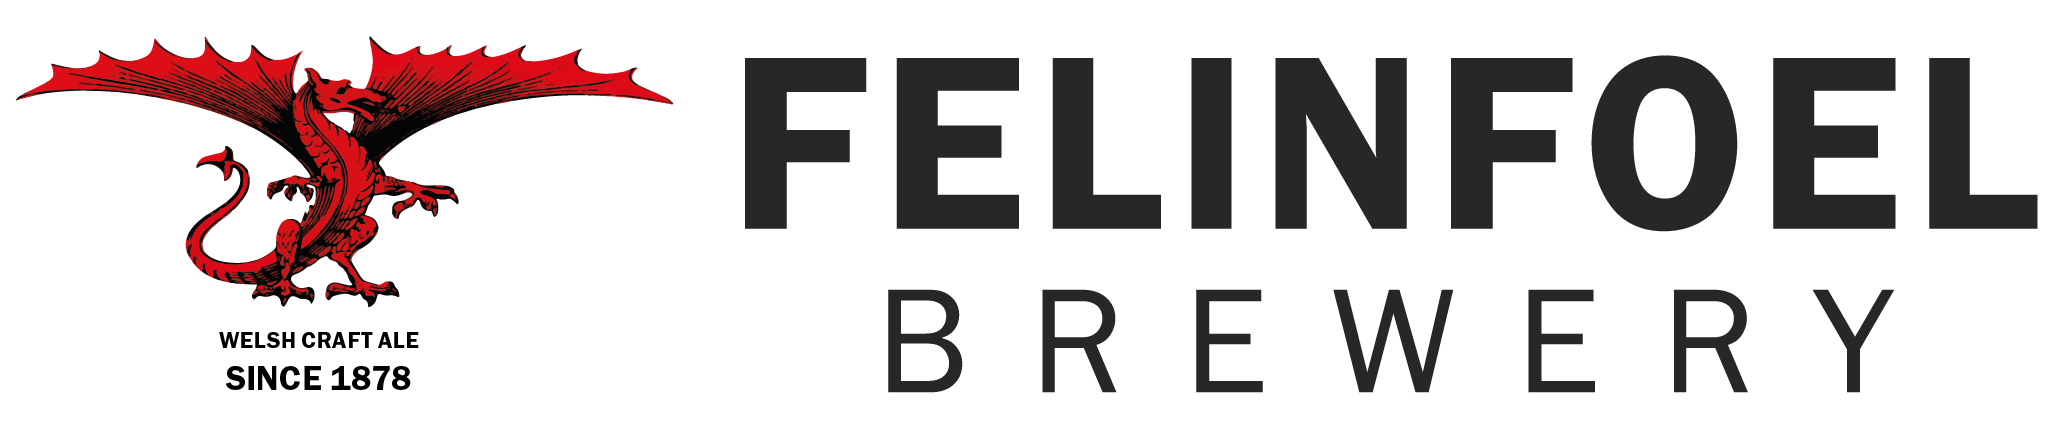 Felinfoel Brewery